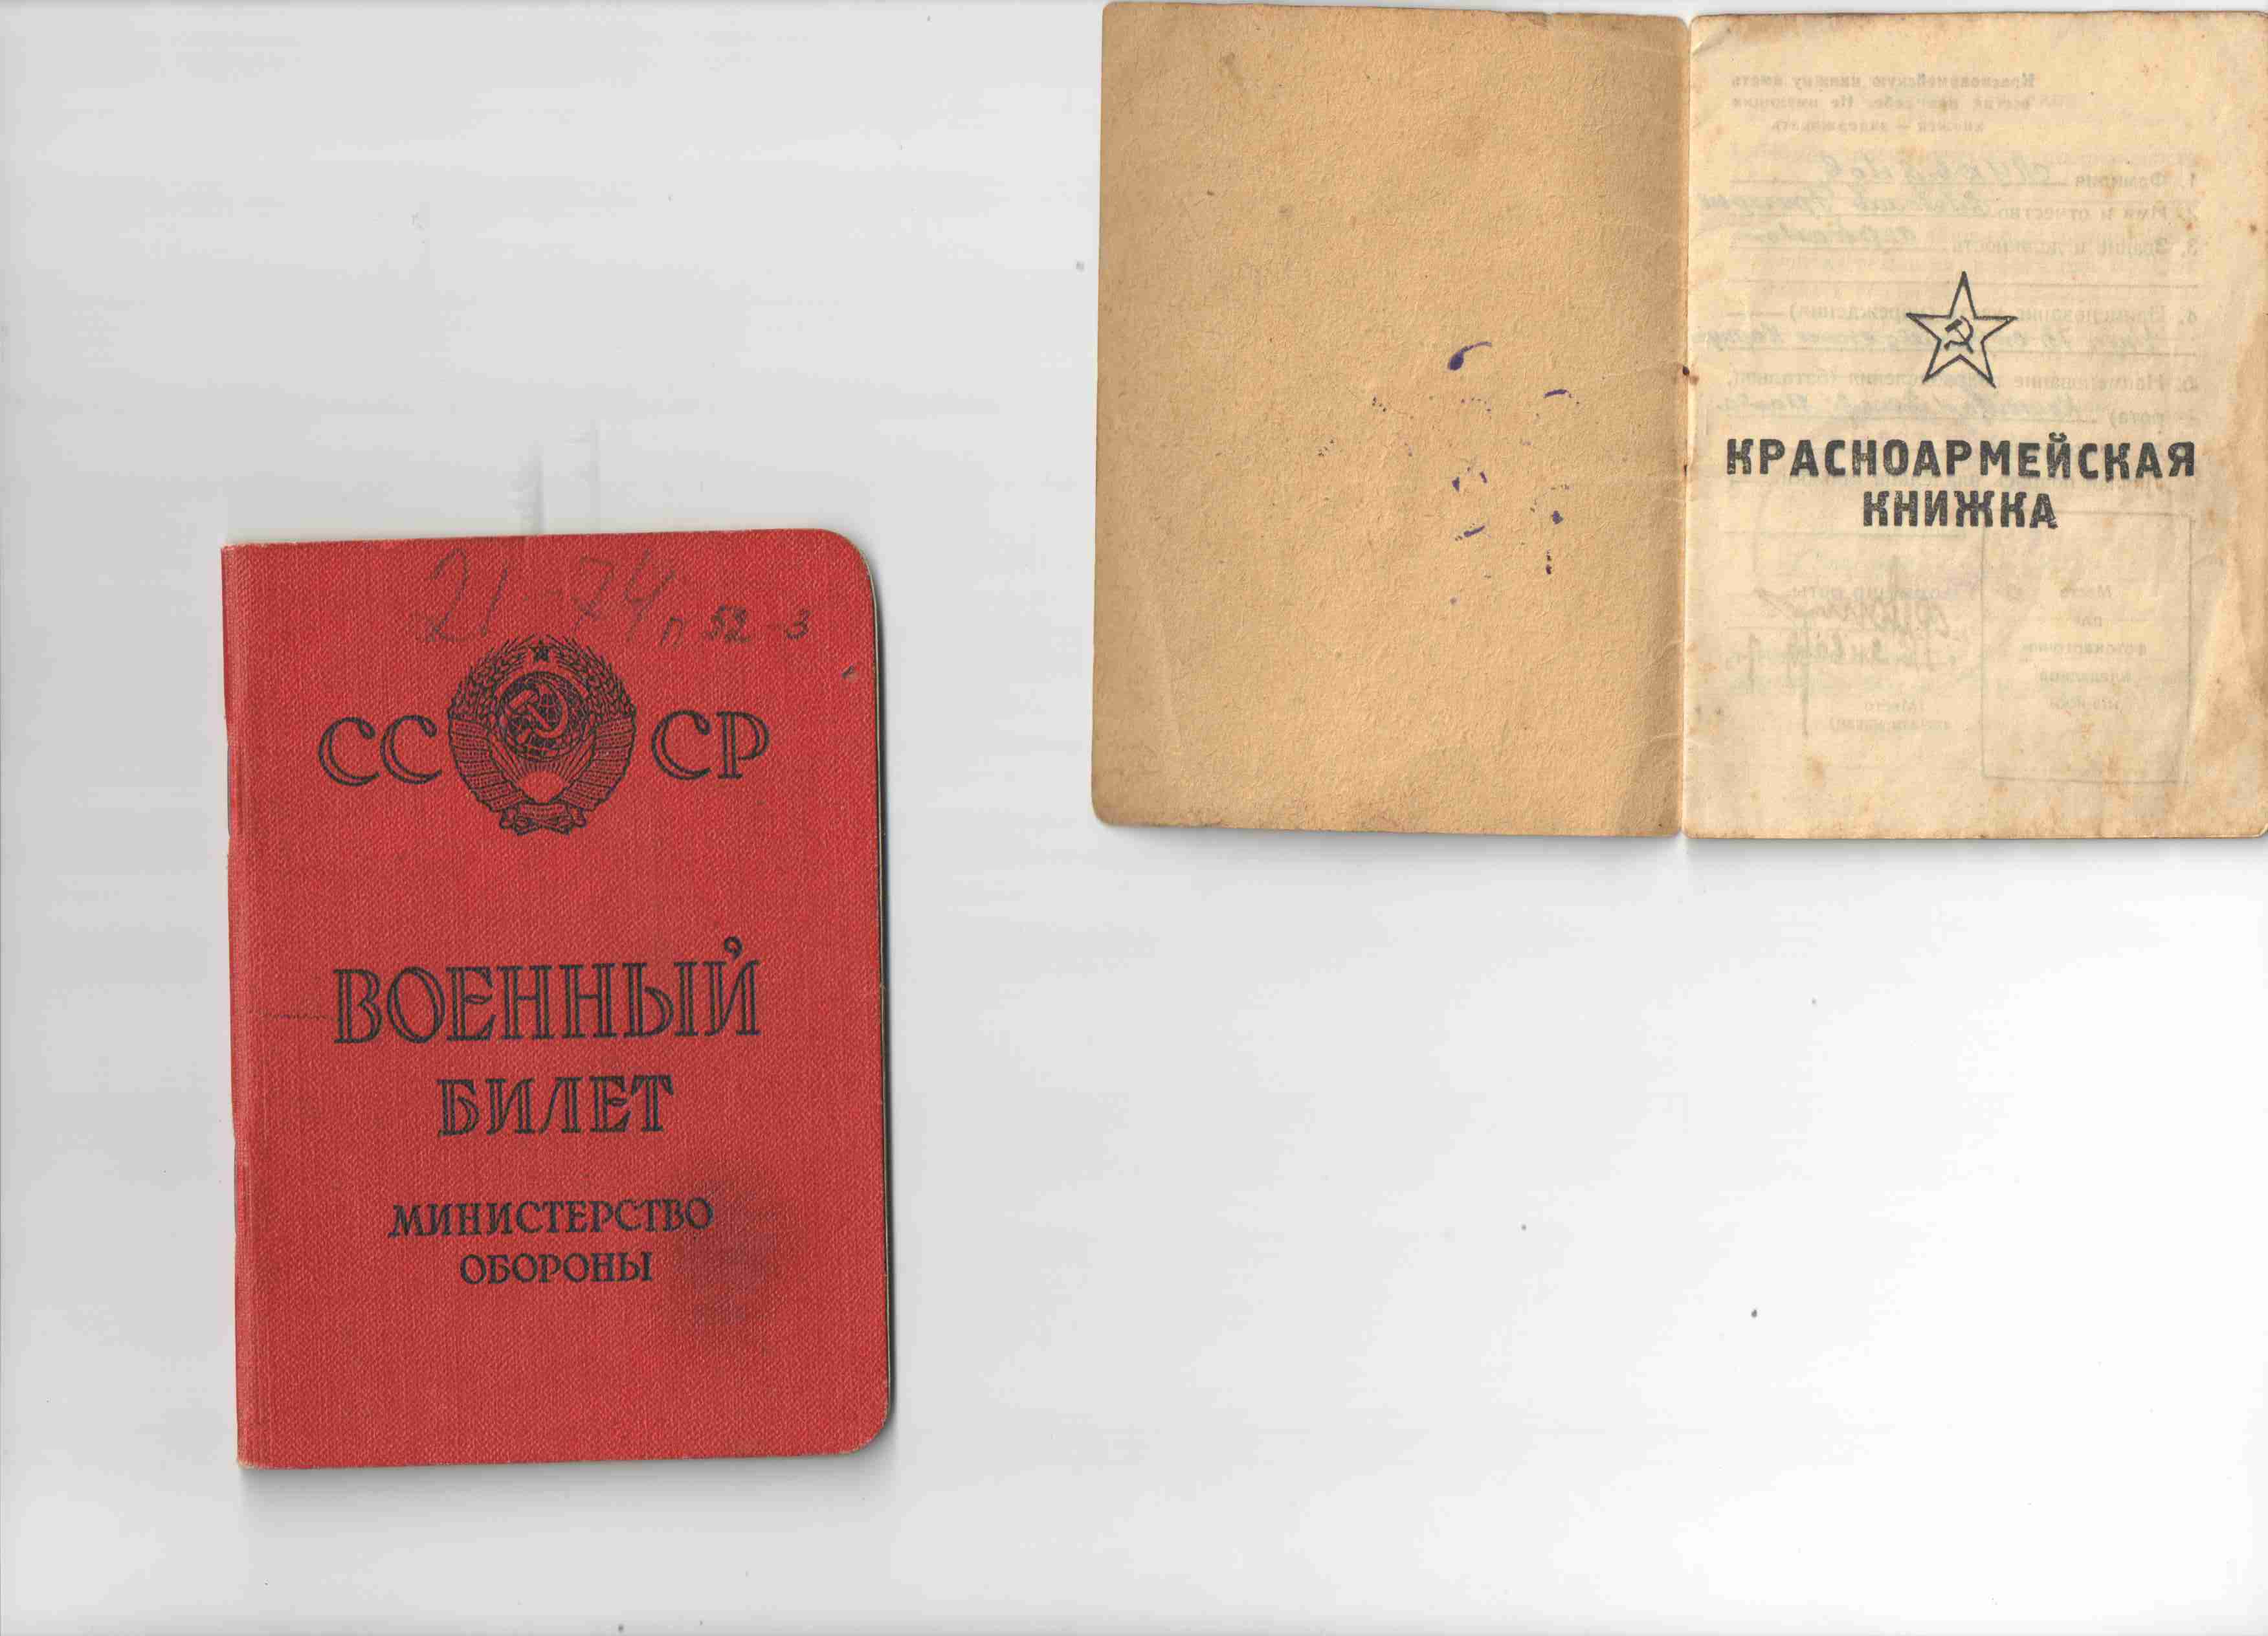 Проект История моей семьи в Великой Отечественной войне